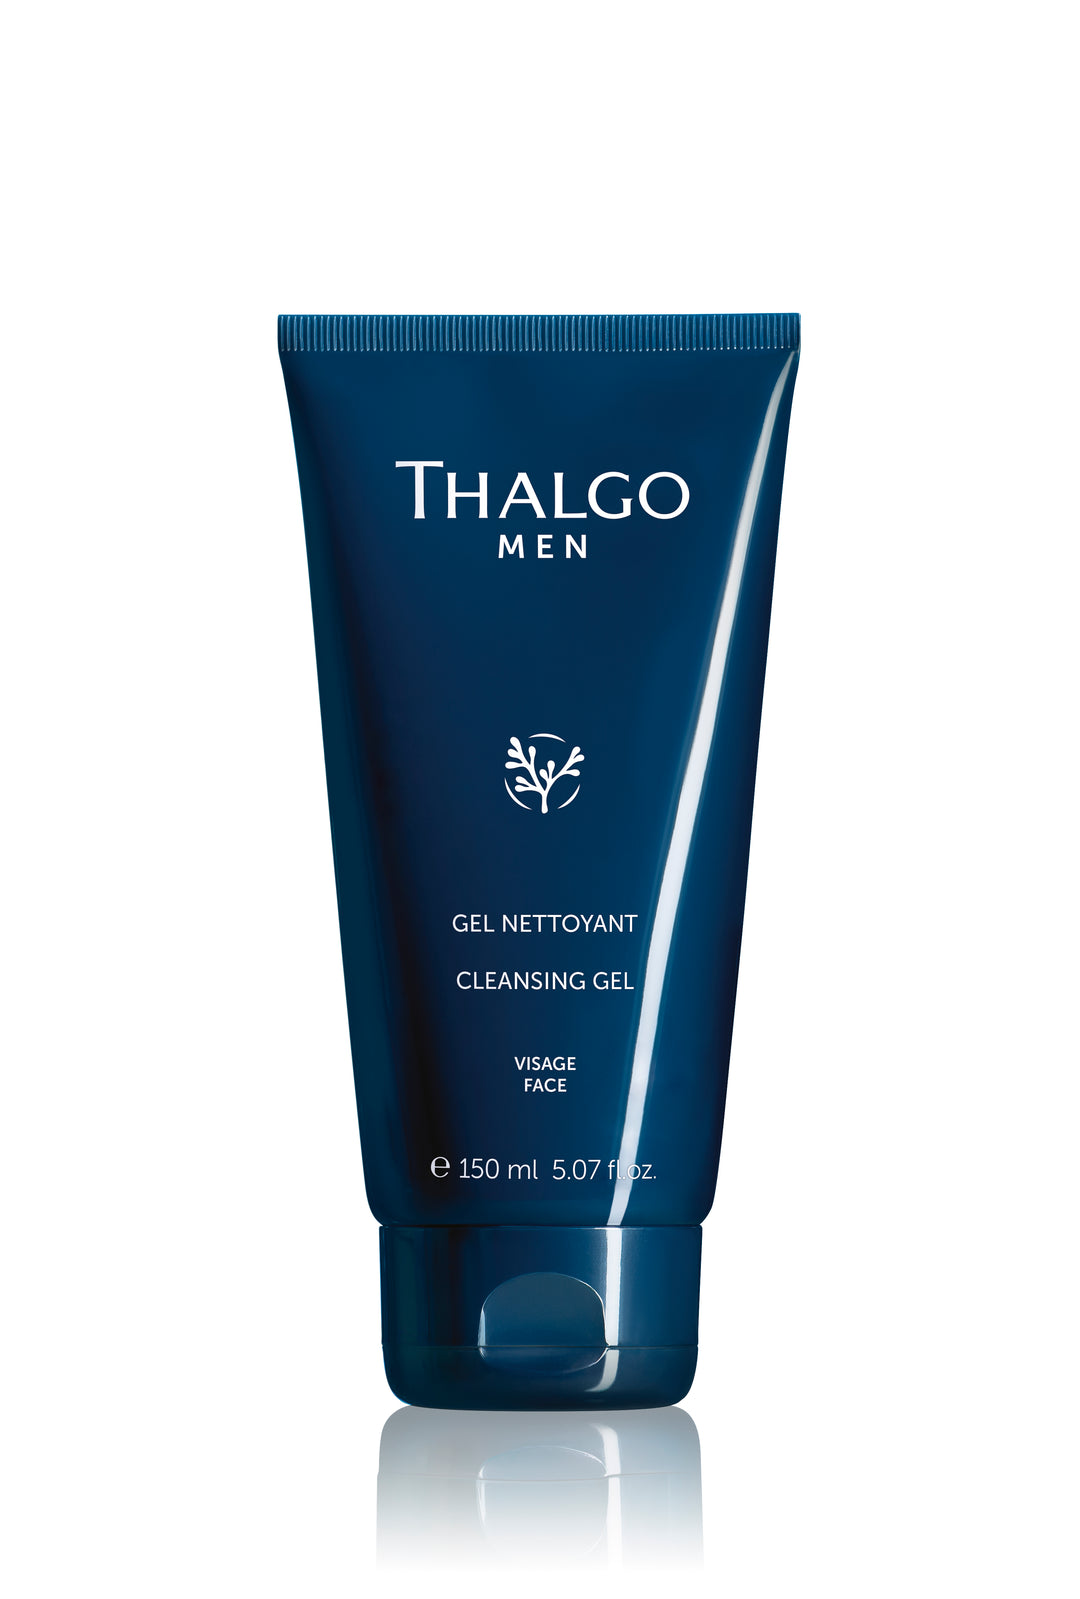 Thalgo Men cleansing gel